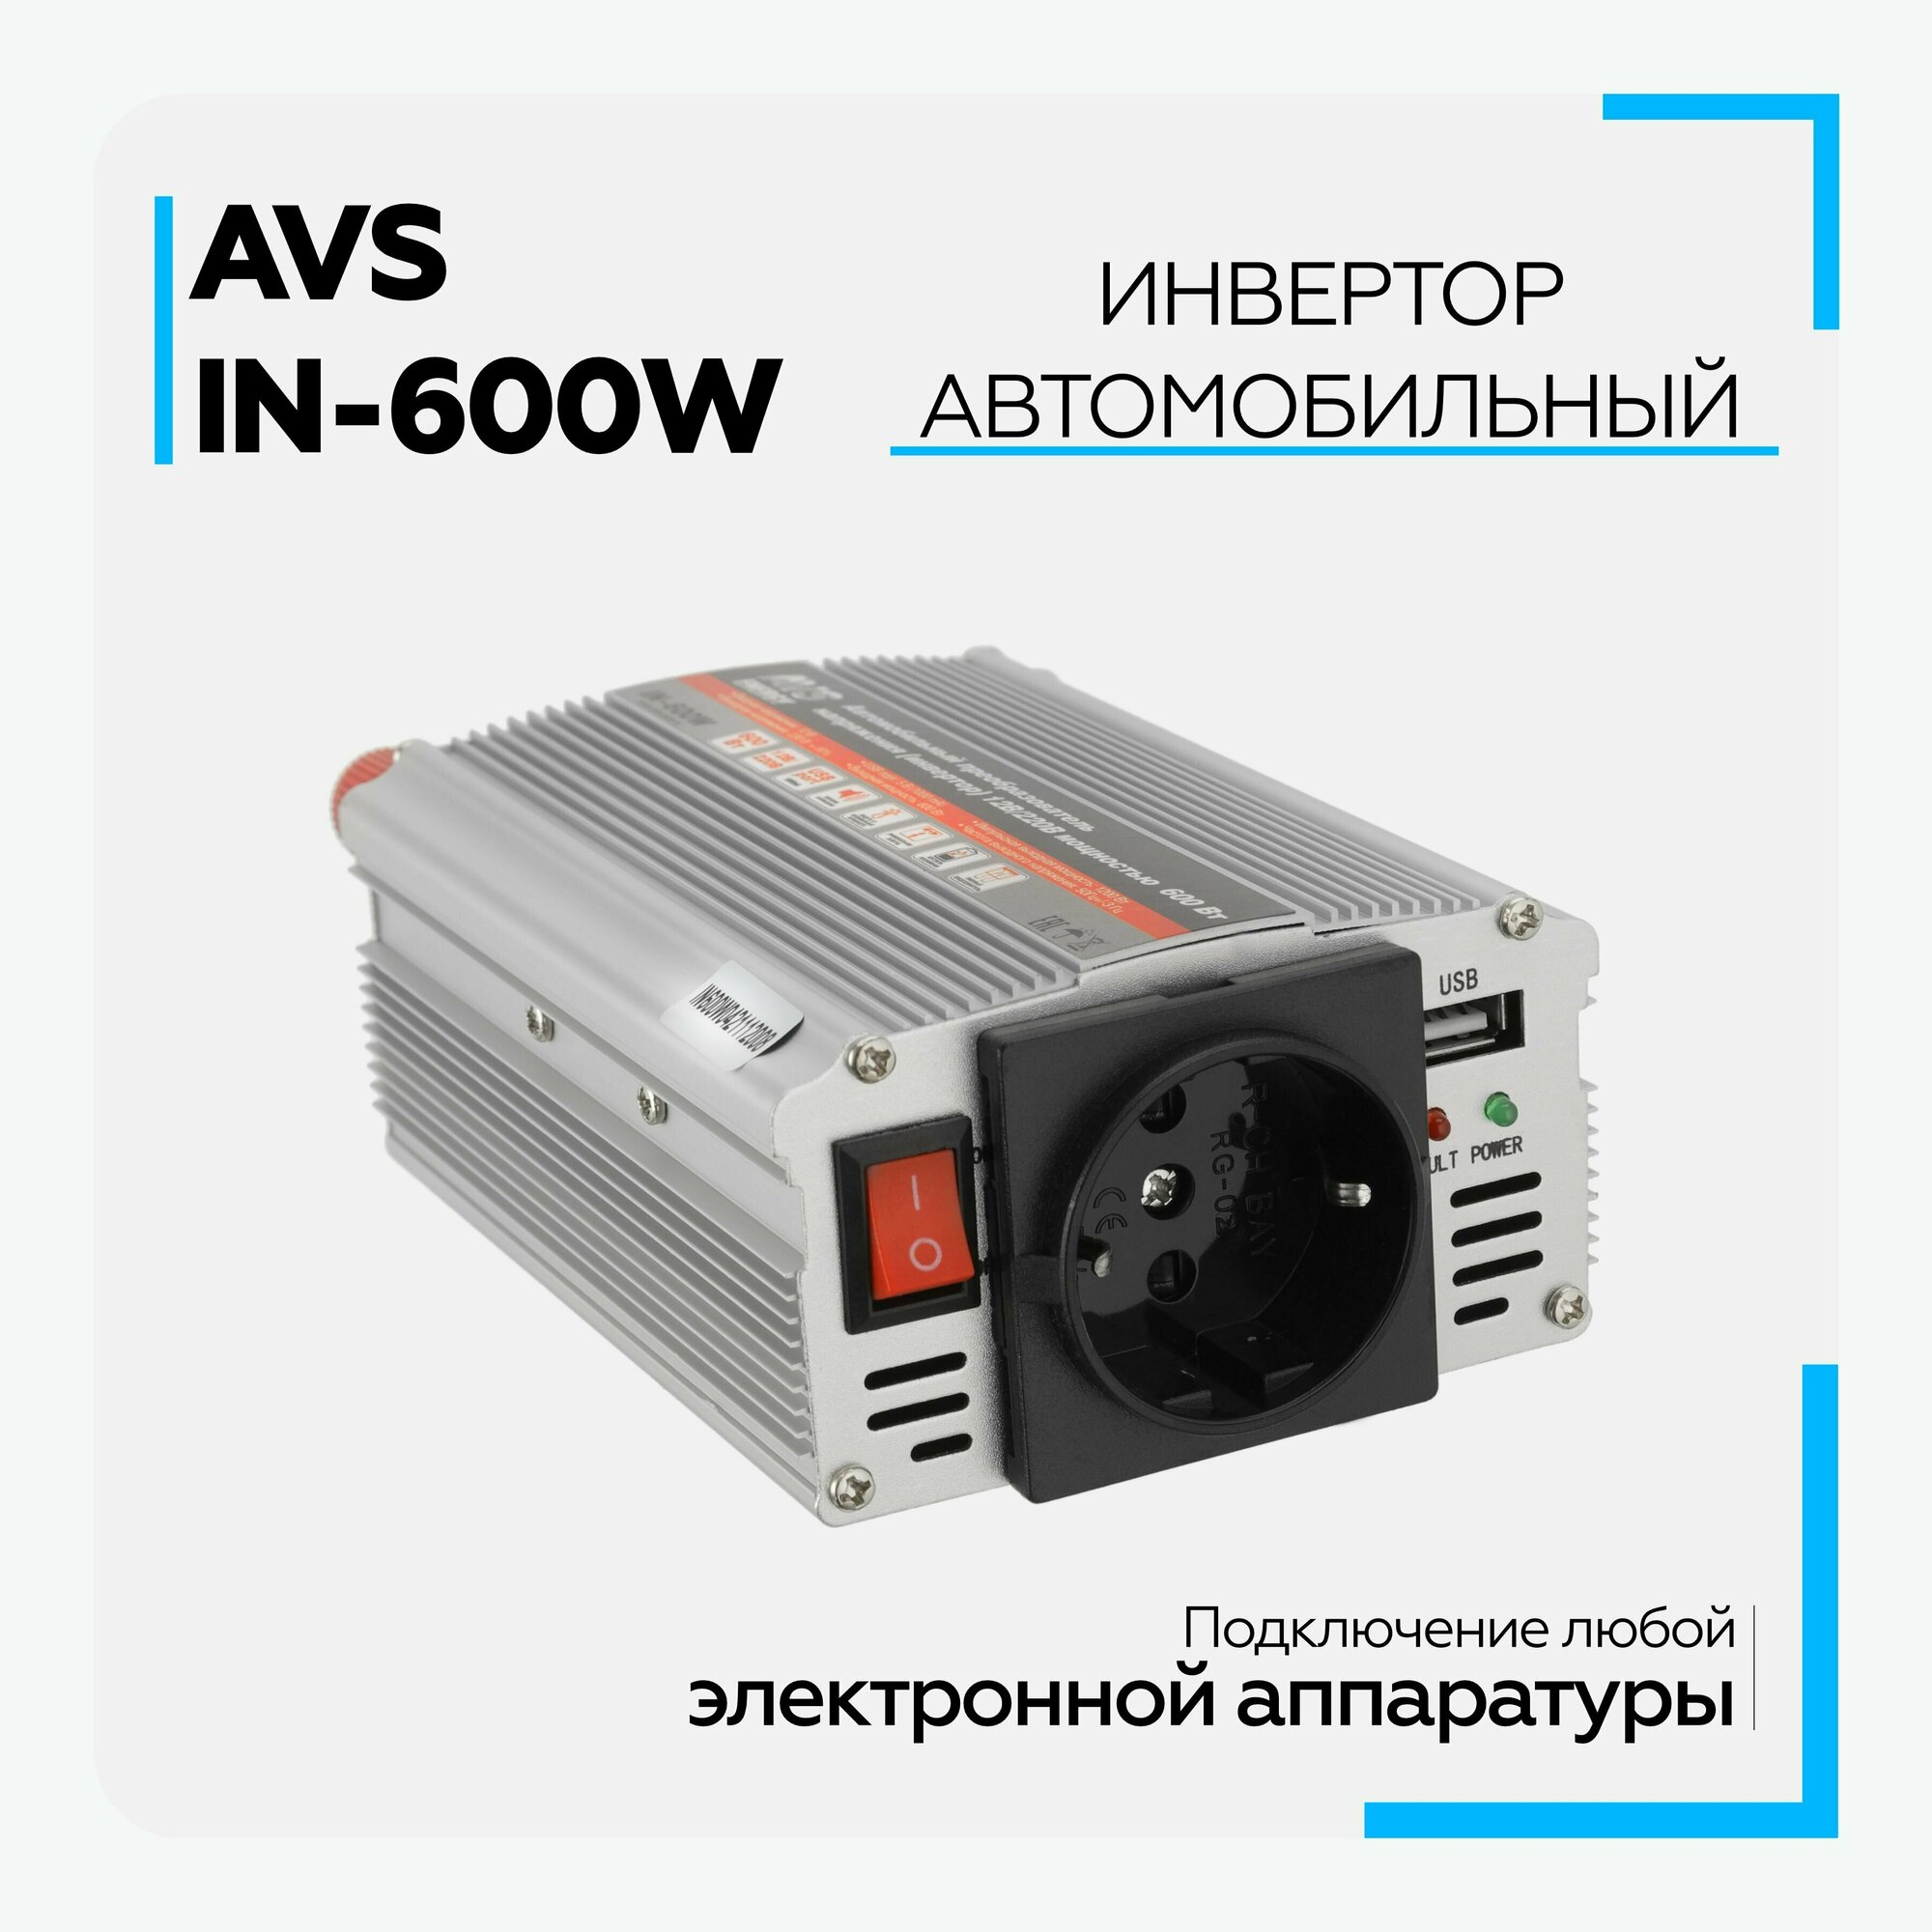 Инвертор автомобильный AVS IN-600W 12V/220V (600W), 43112 / Преобразователь напряжения